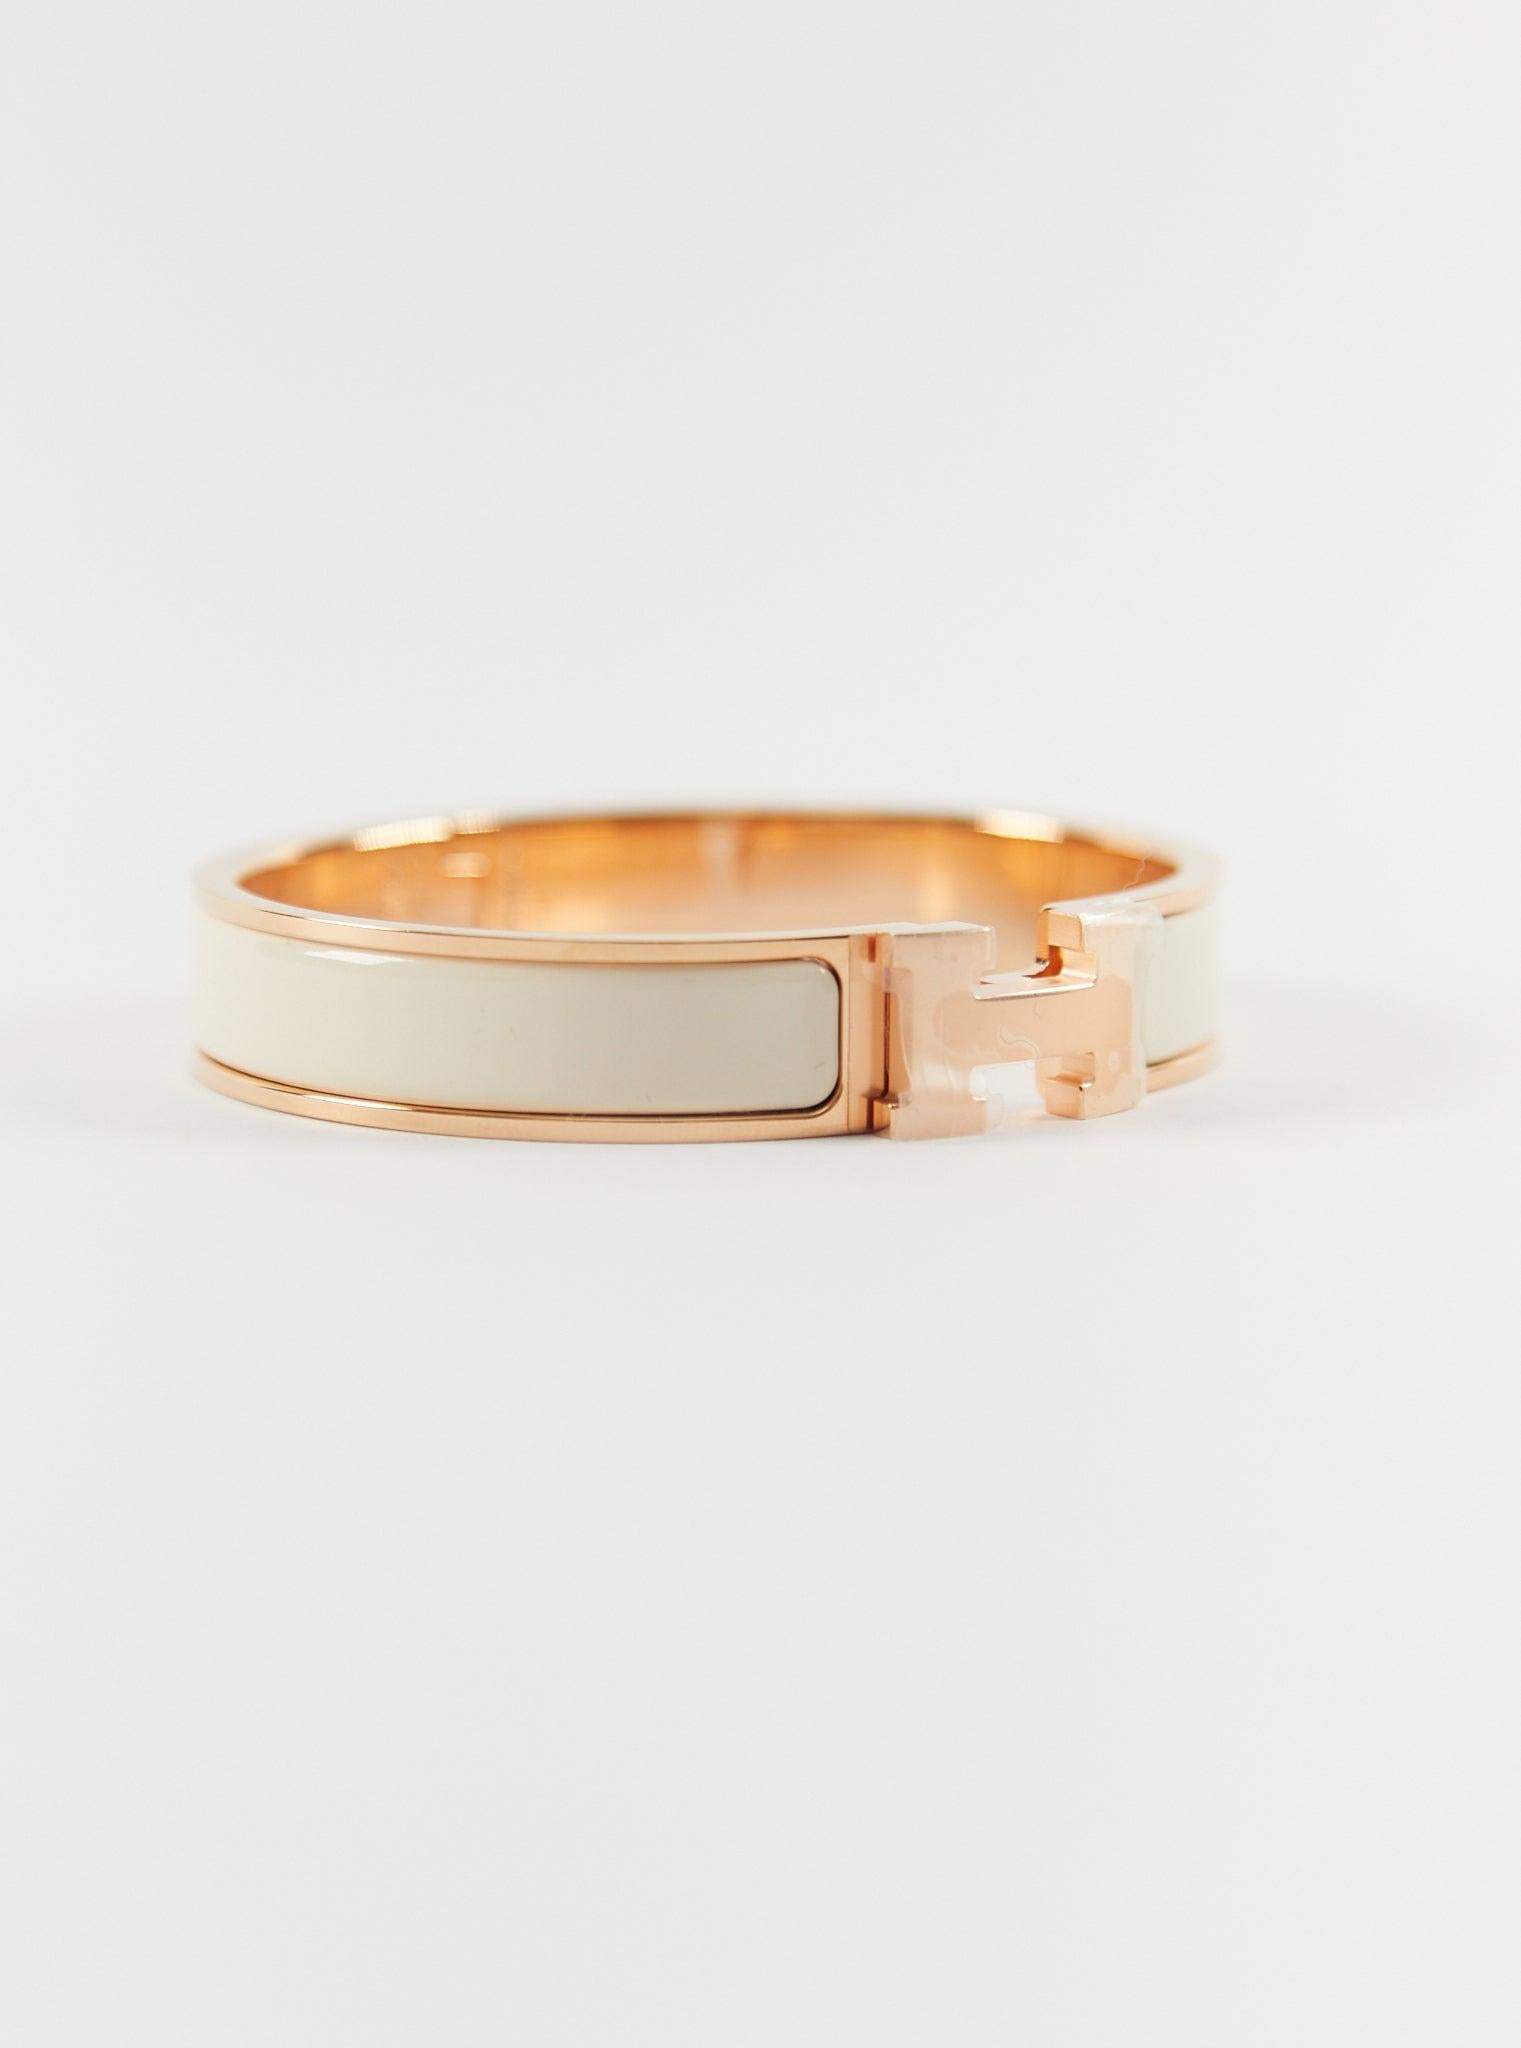 Hermès Clic H PM Bracelet in Creme & Rose Gold

Wrist size: 16.8 cm  Width: 12 mm

Made in France